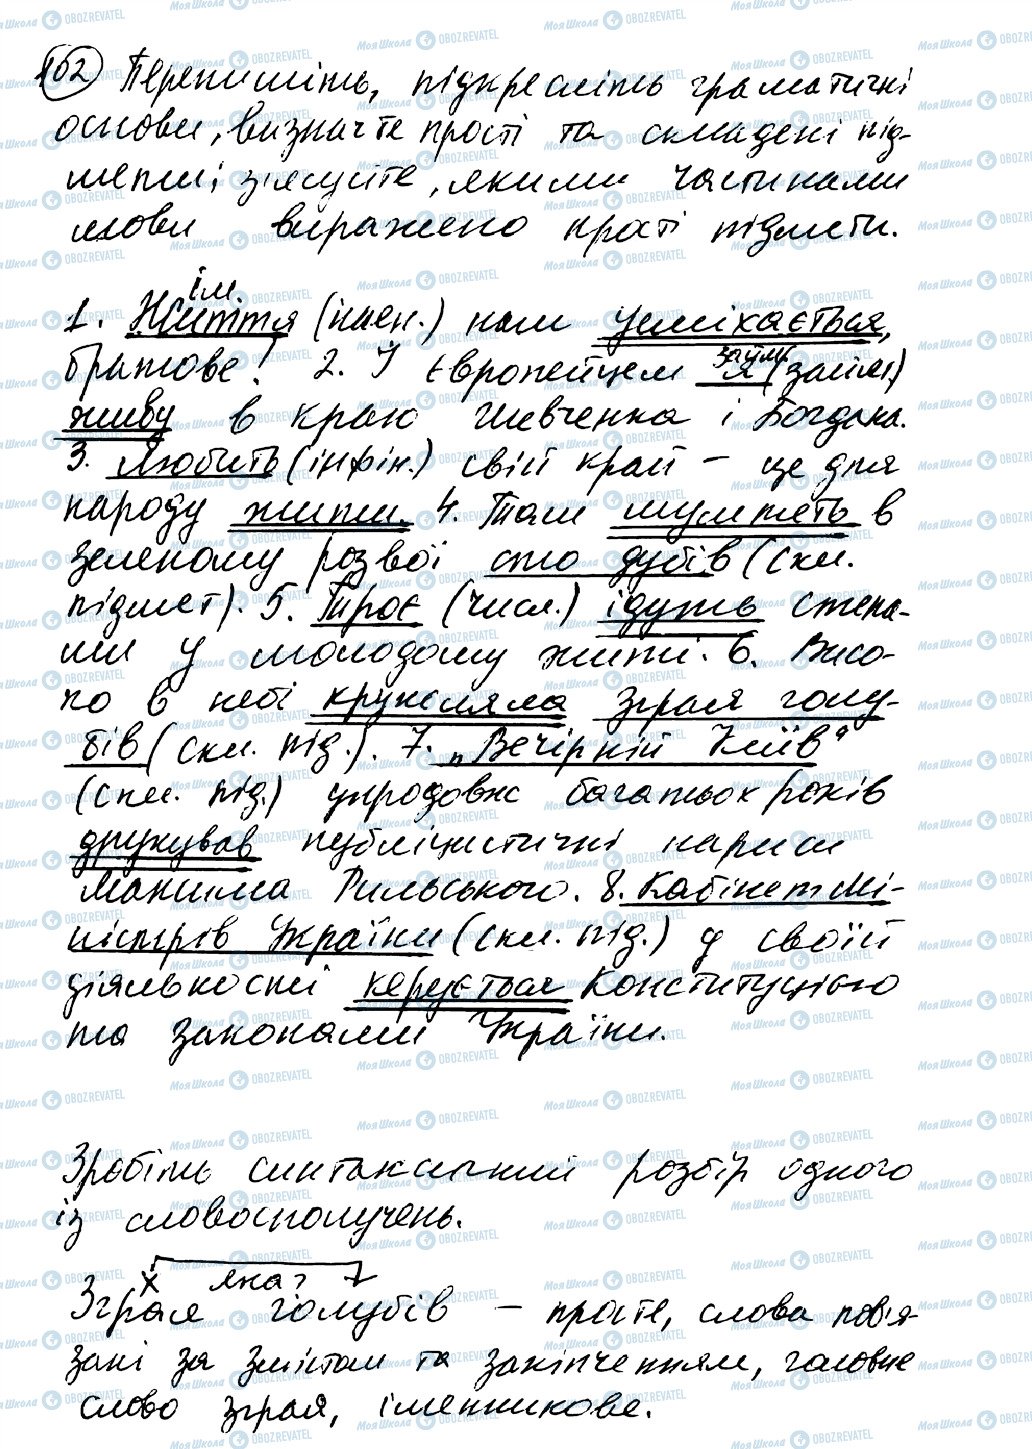 ГДЗ Українська мова 8 клас сторінка 102